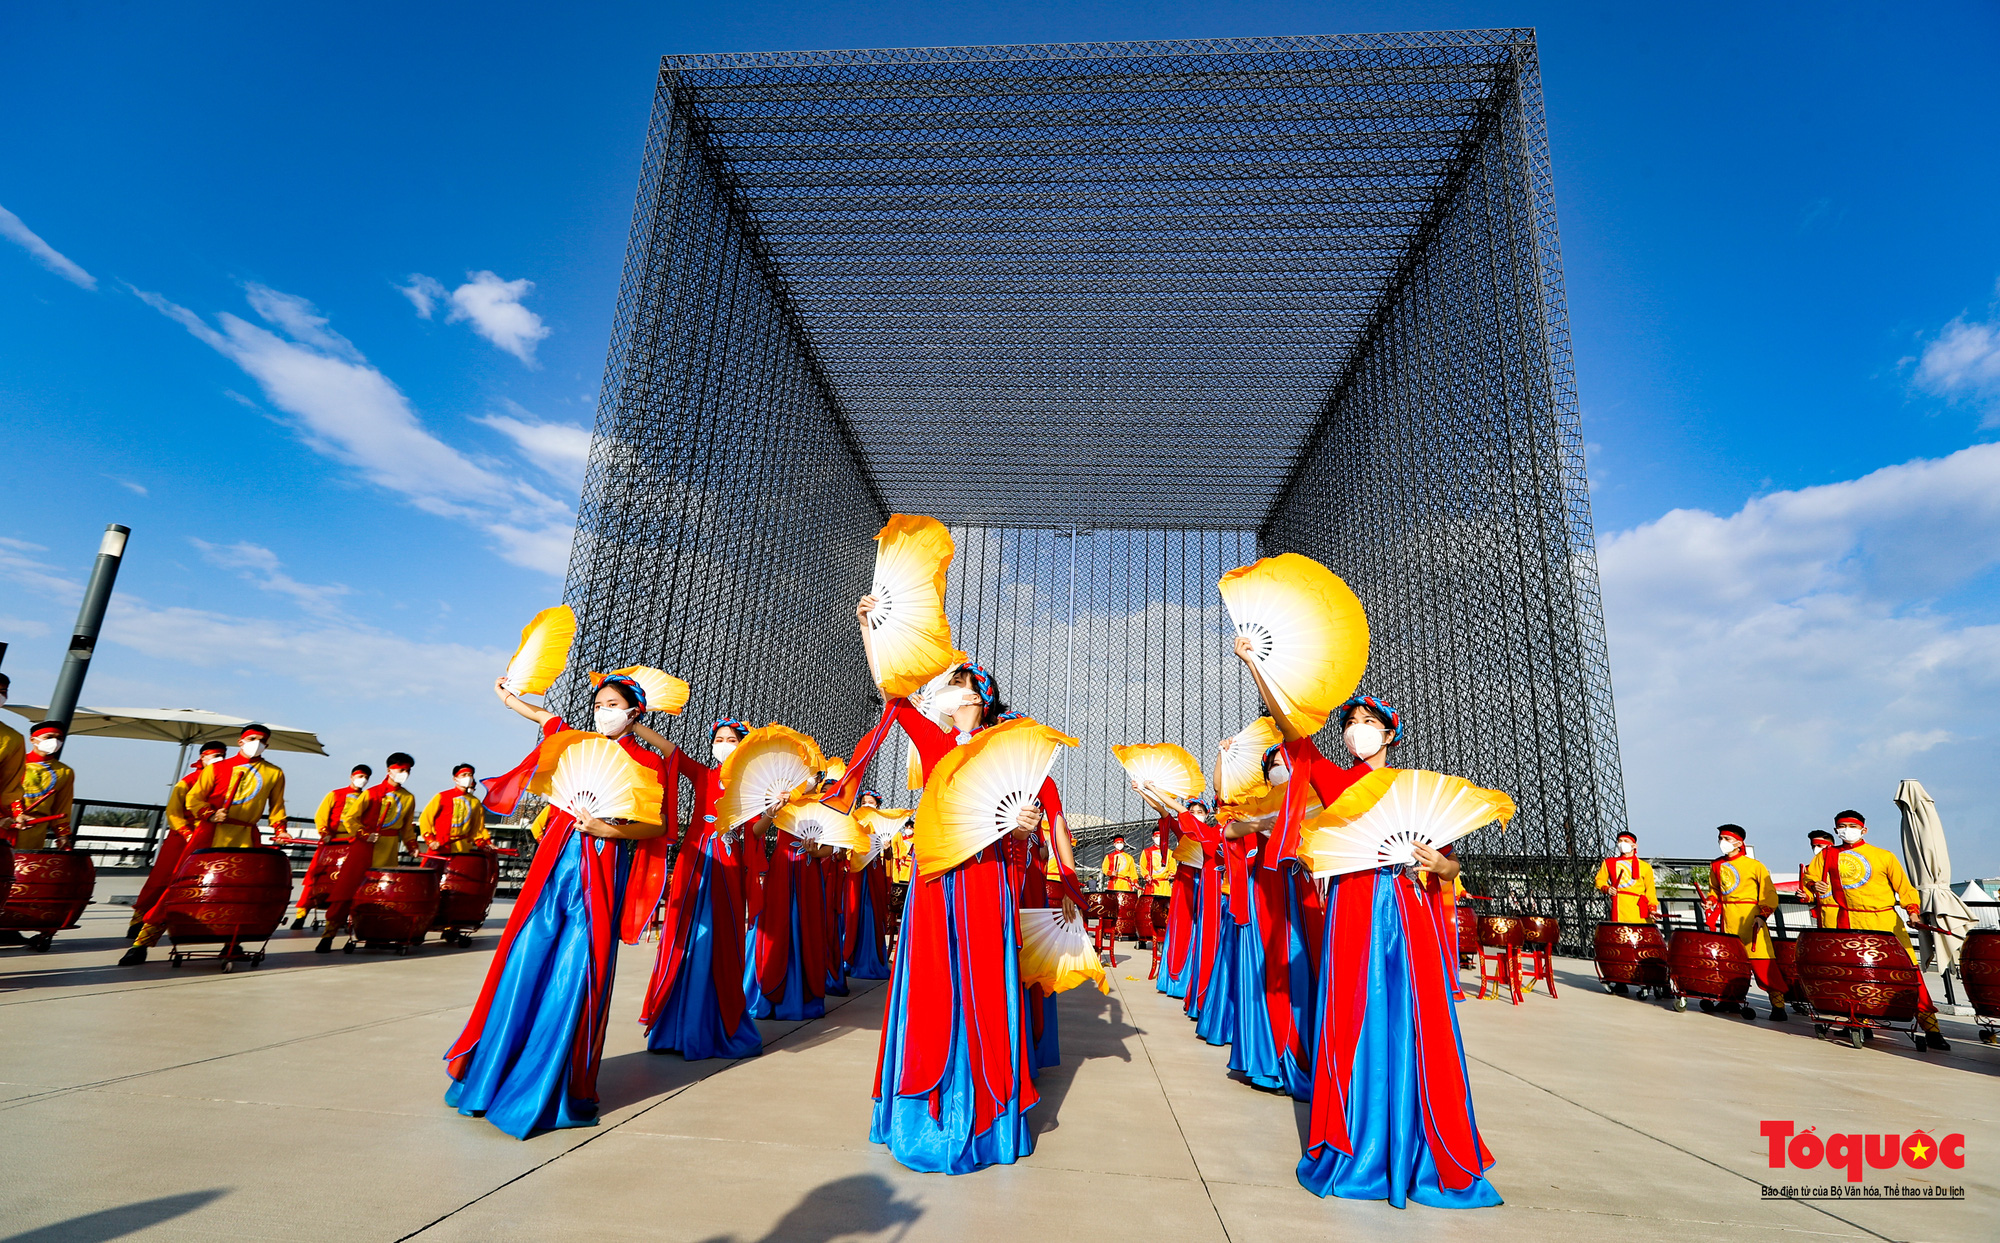 Việt Nam mở cửa lớn EXPO 2020, đánh dấu một năm 2021, mở ra những điều tốt đẹp mới trong năm 2022 - Ảnh 5.